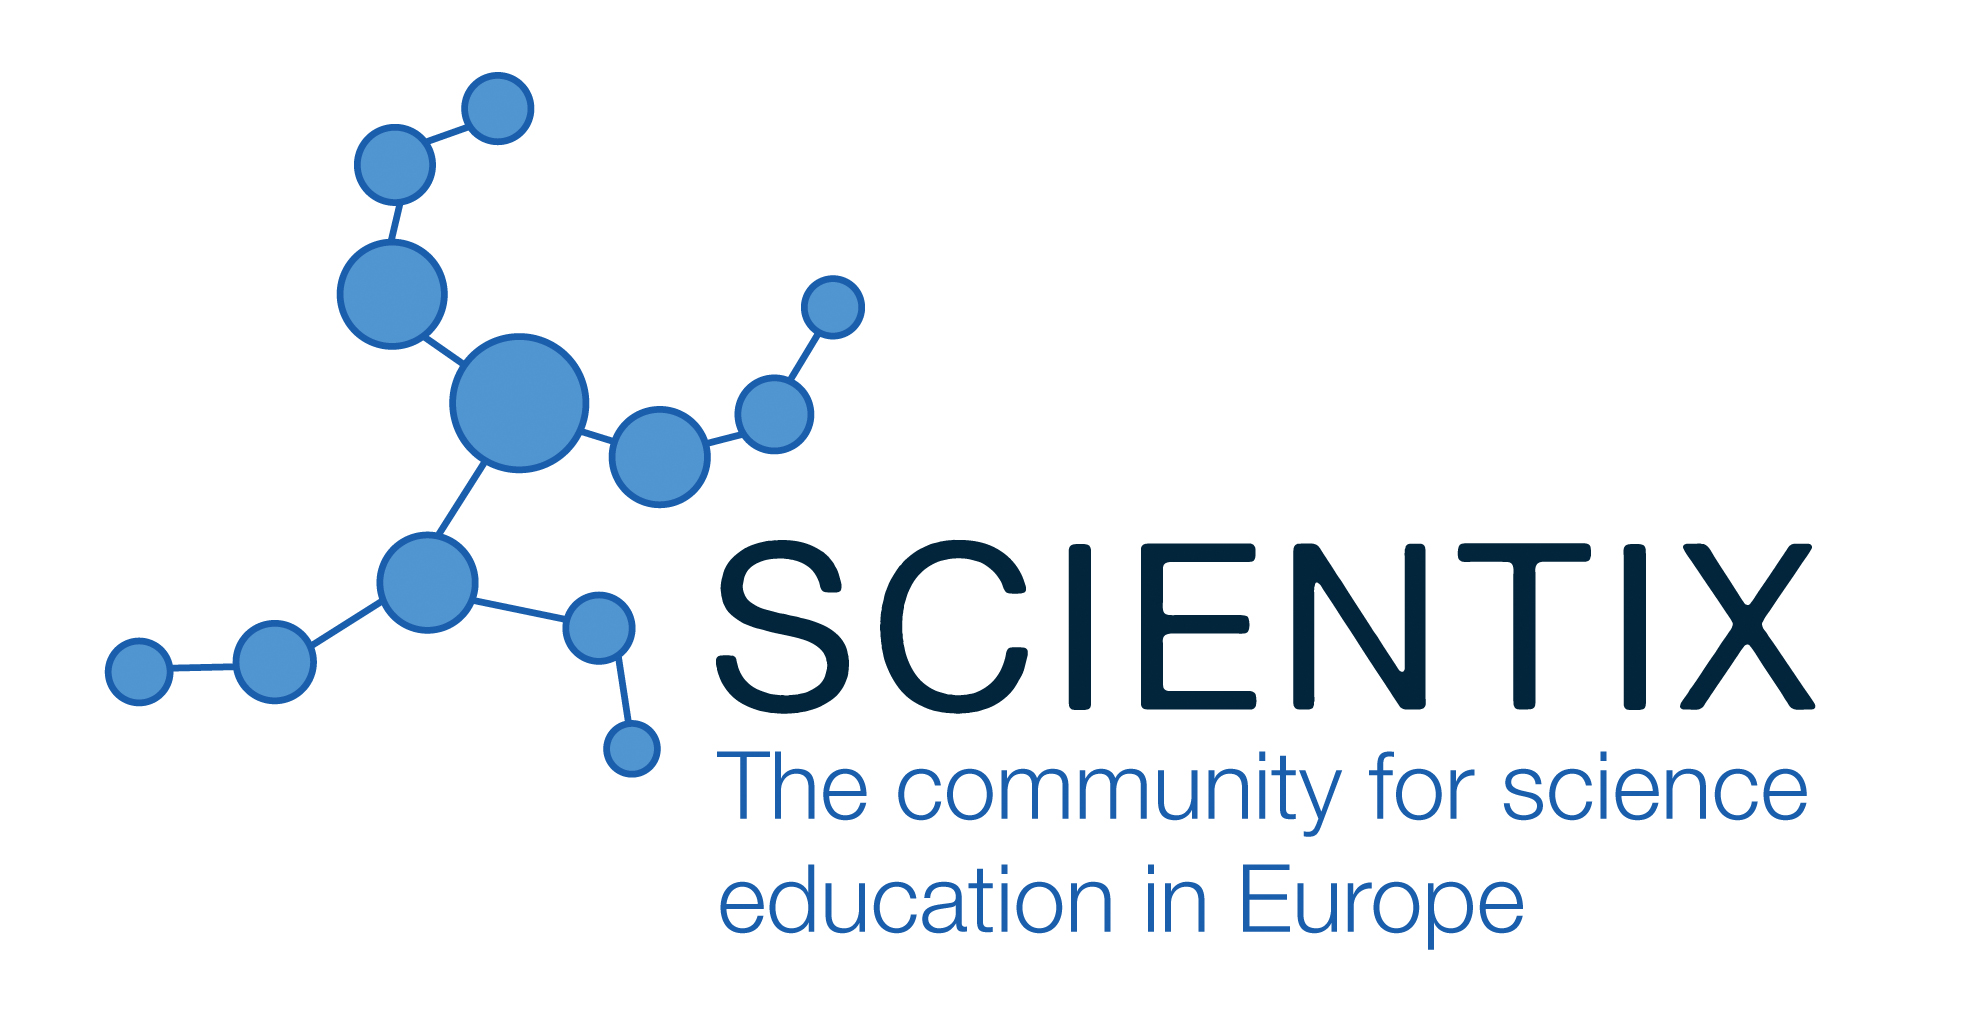 Dabaszinātņu skolotāji aicināti pieteikties projekta «Scientix» konferencei Briselē